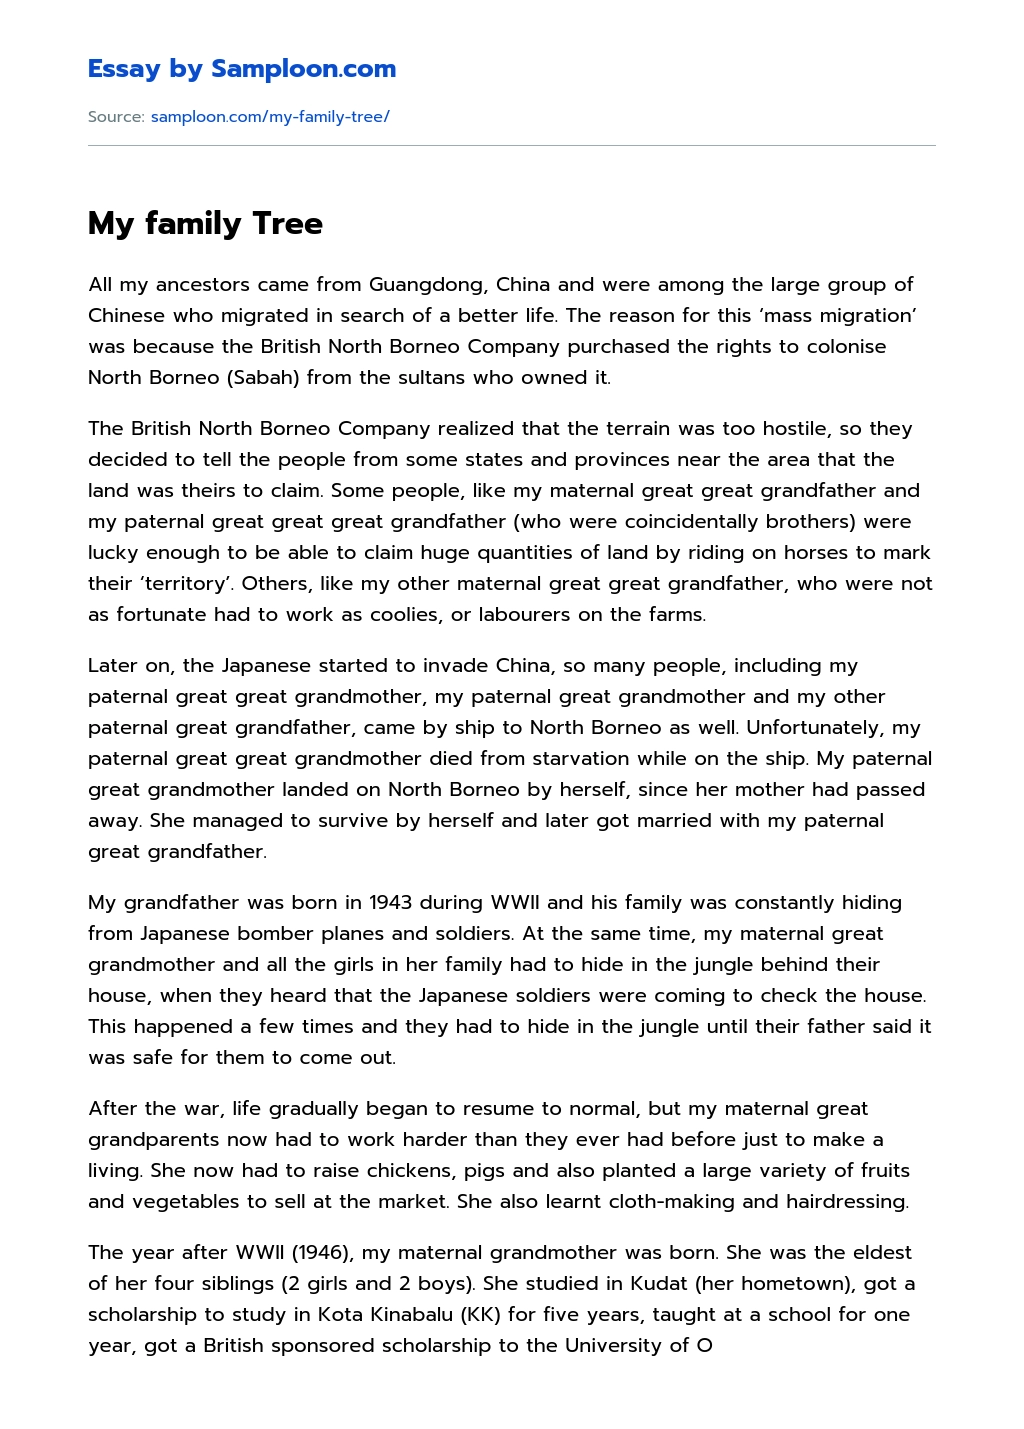 My family Tree Creative Essay essay